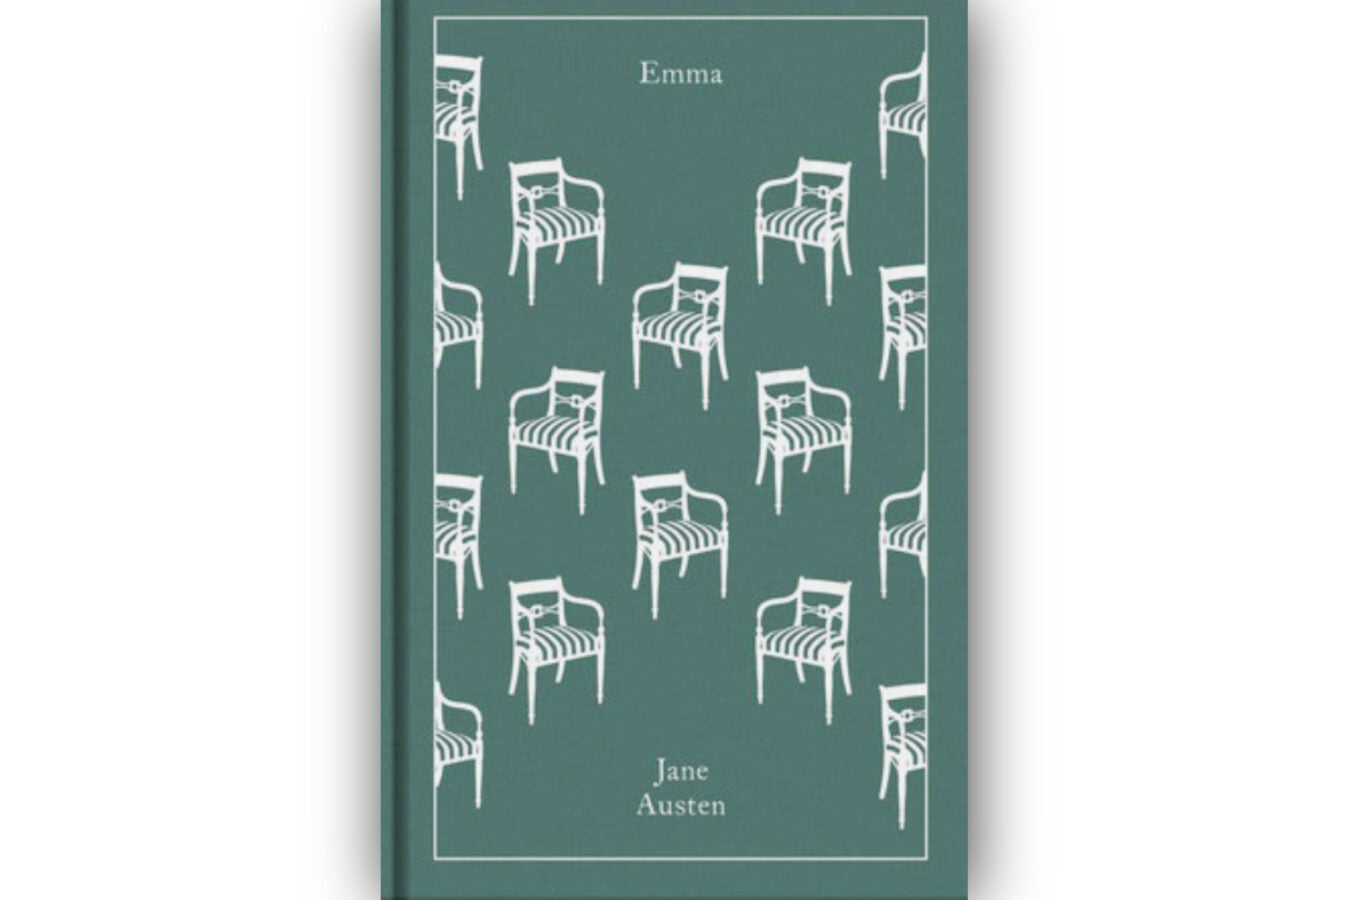 "Emma" book cover.